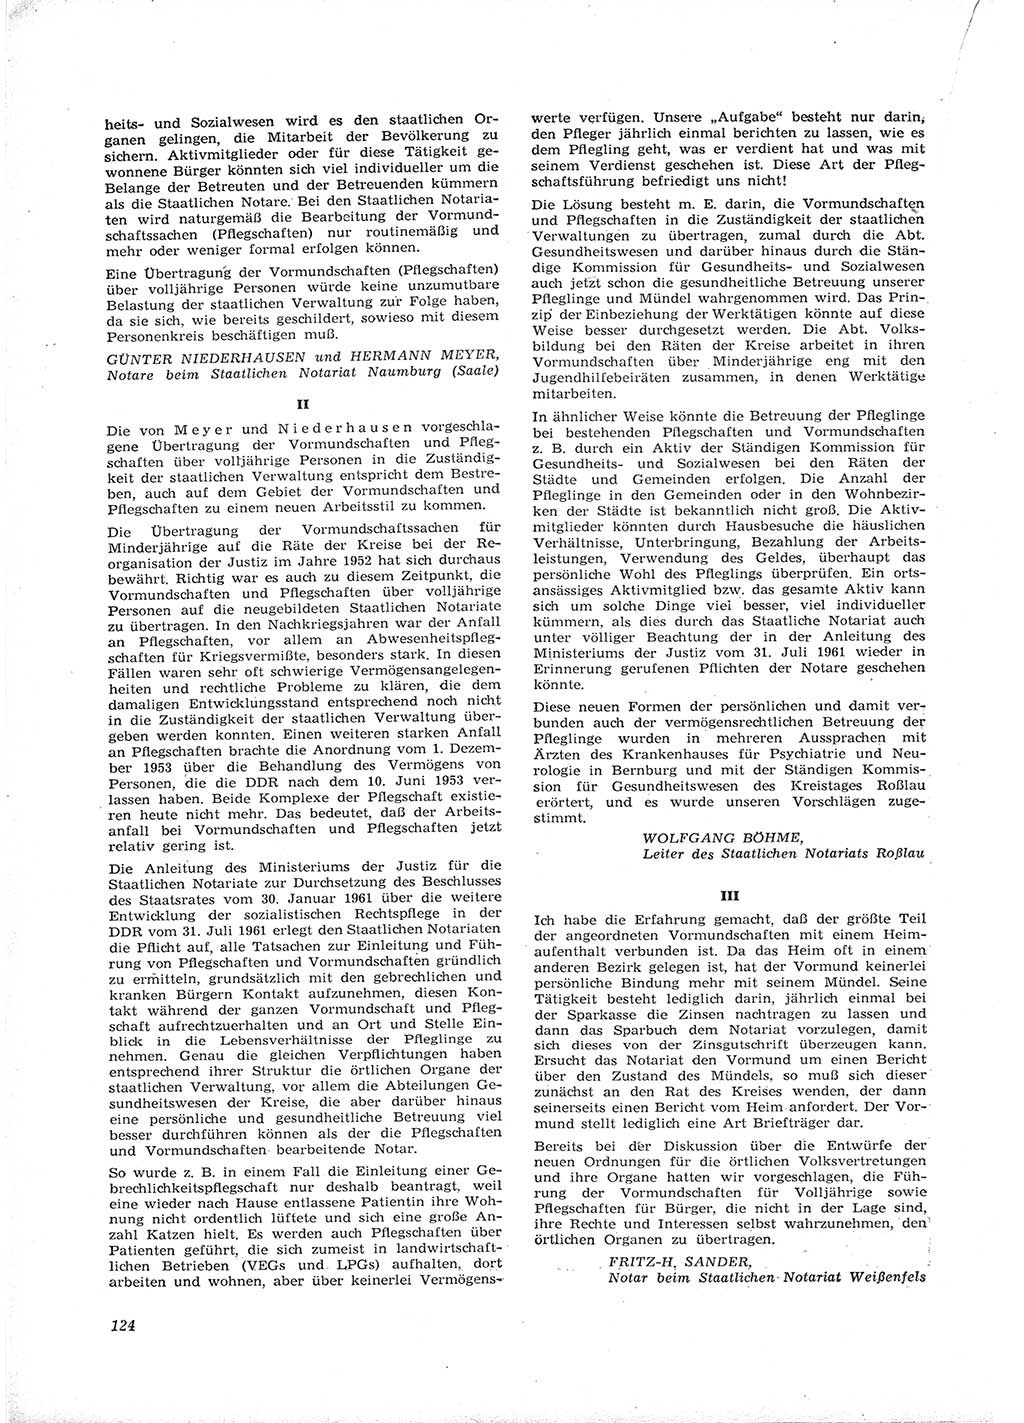 Neue Justiz (NJ), Zeitschrift für Recht und Rechtswissenschaft [Deutsche Demokratische Republik (DDR)], 16. Jahrgang 1962, Seite 124 (NJ DDR 1962, S. 124)